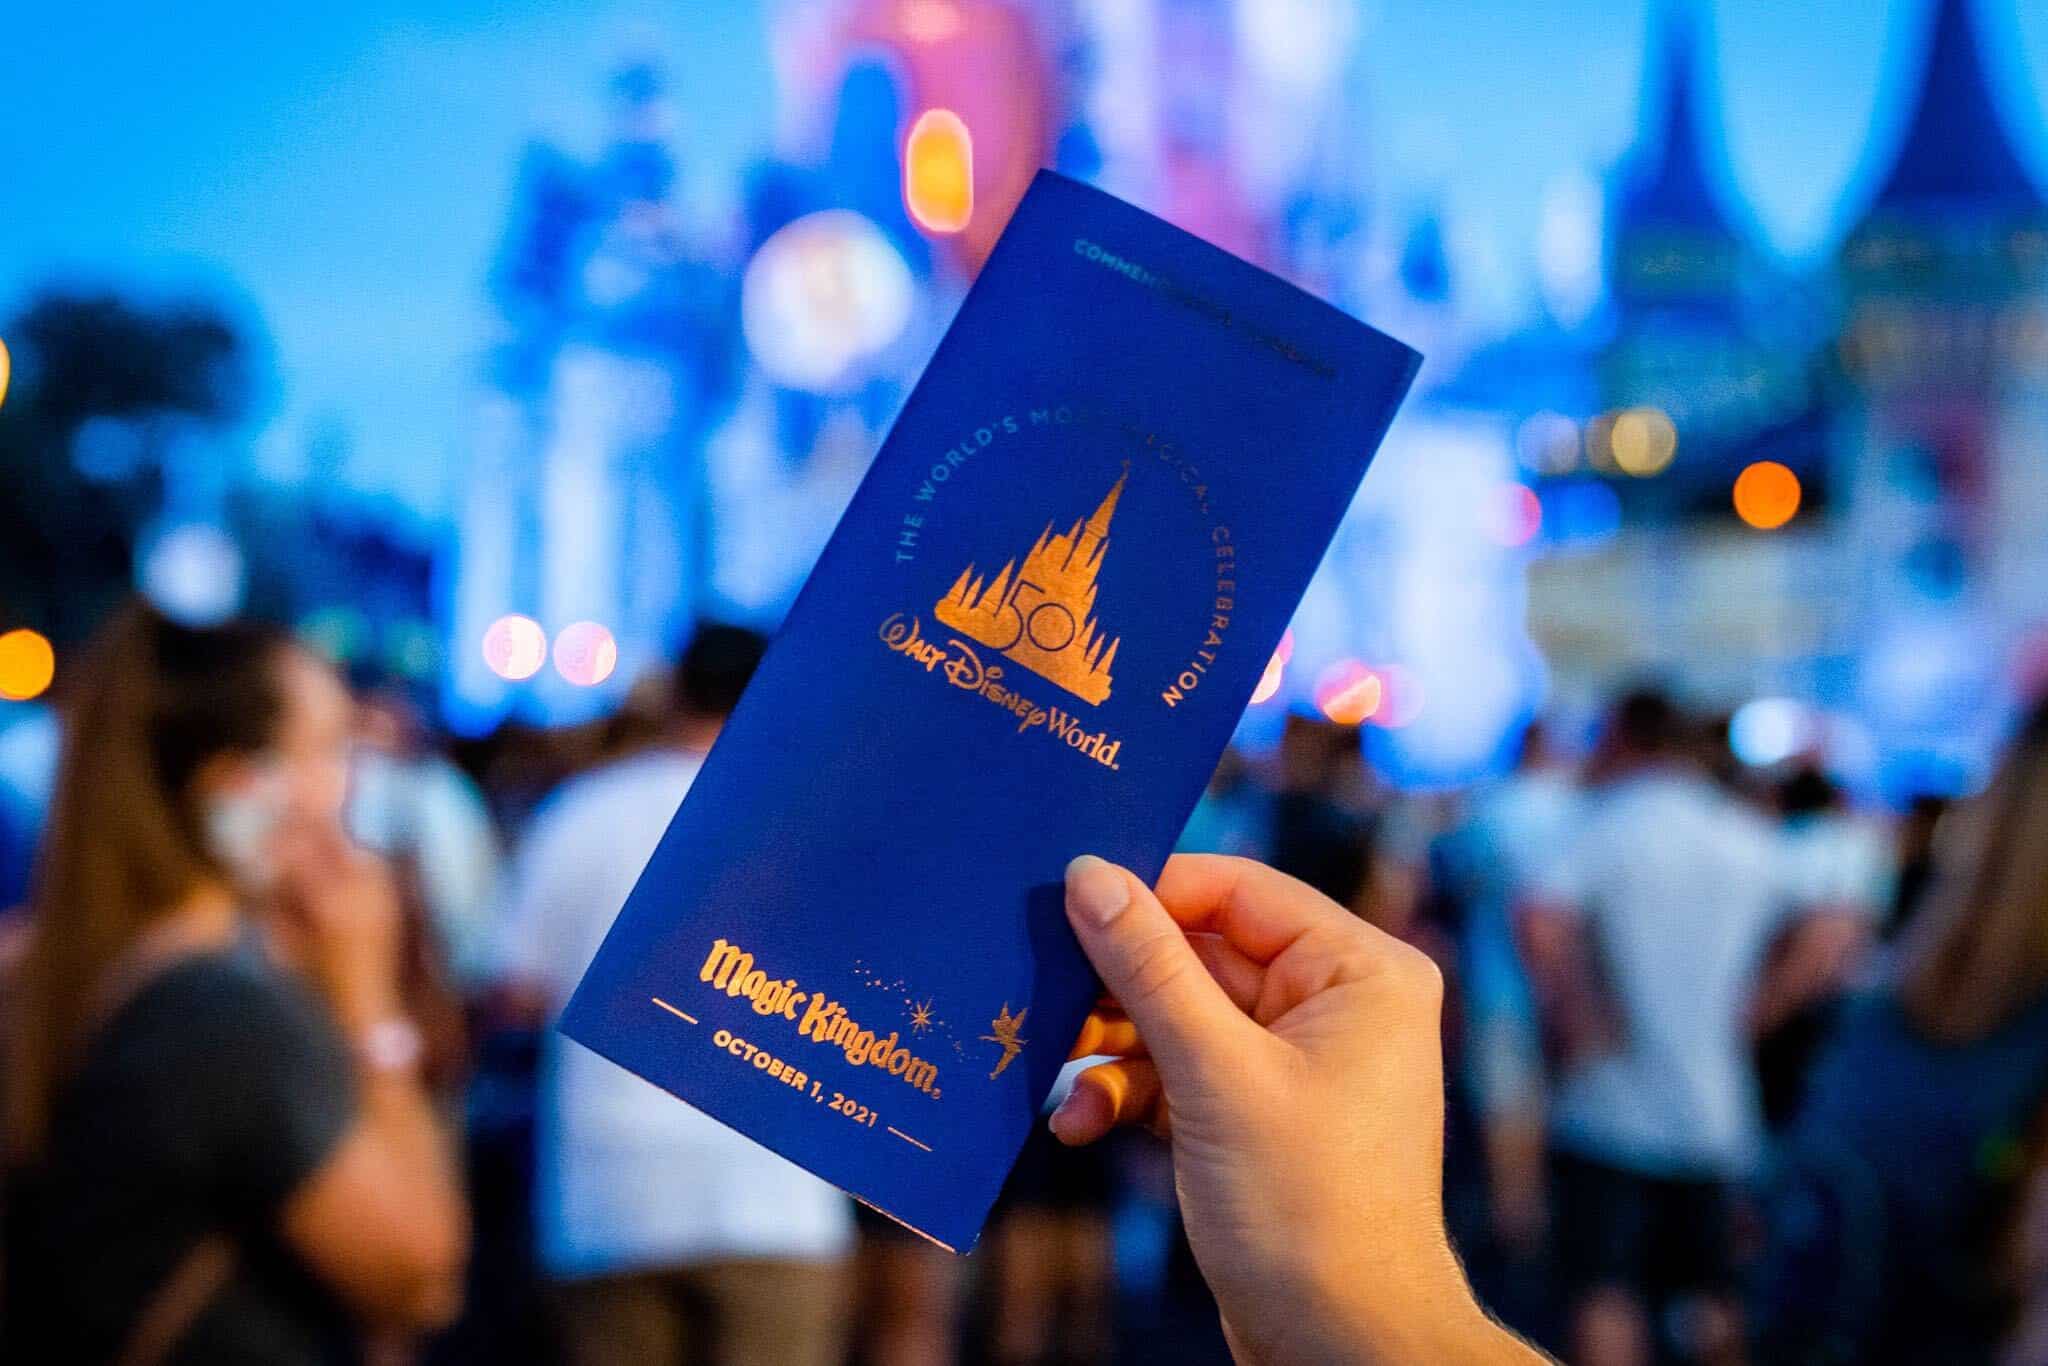 Día de inauguración del 50 aniversario de Walt Disney World